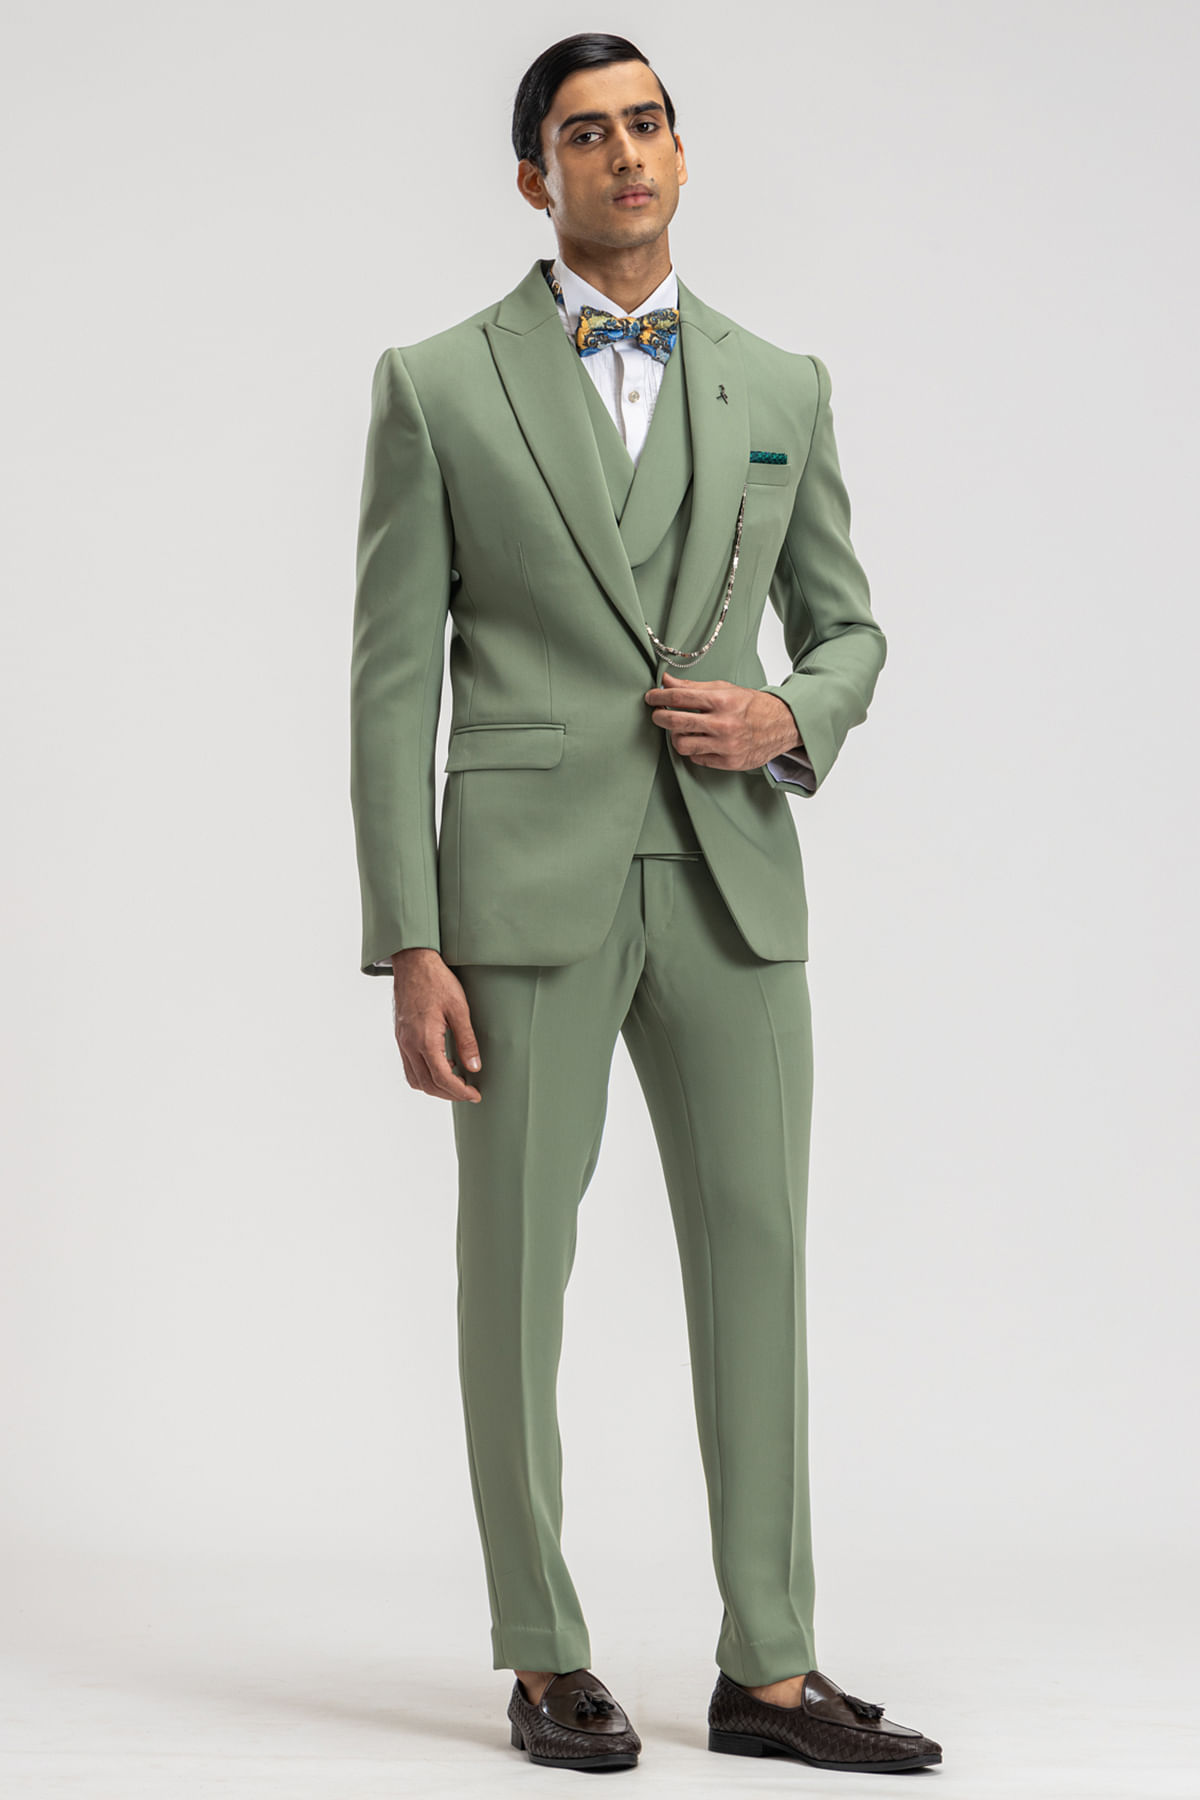 Sage Green Woven Italian Tuxedo Suit